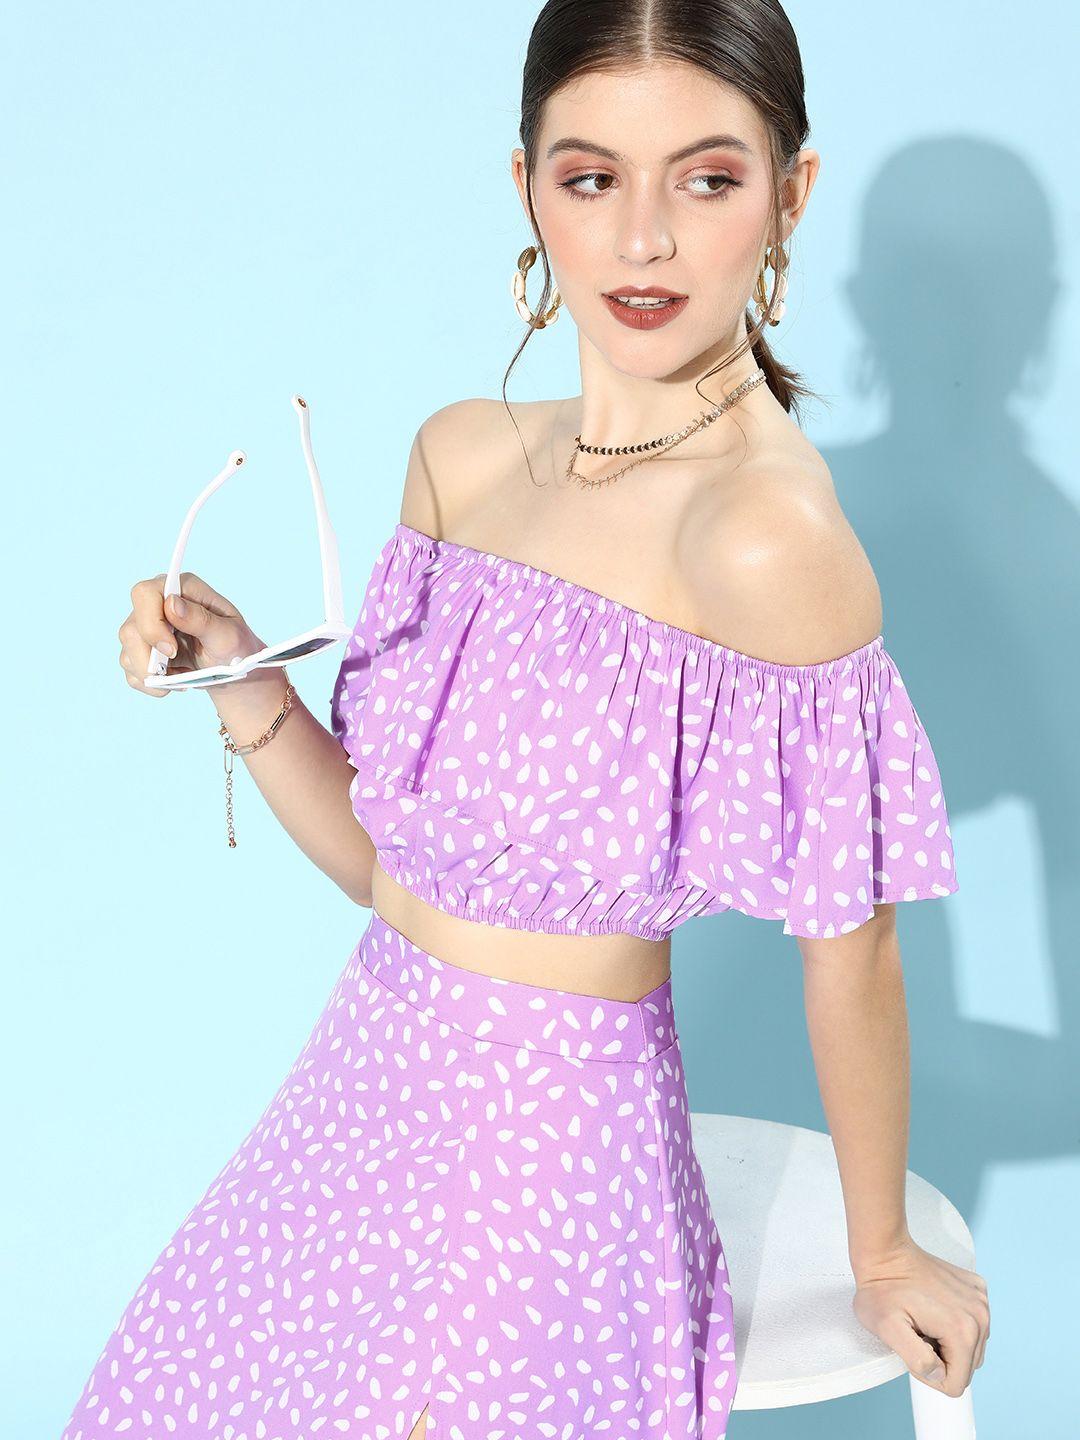 berrylush women charming purple polka dots co-ords dress